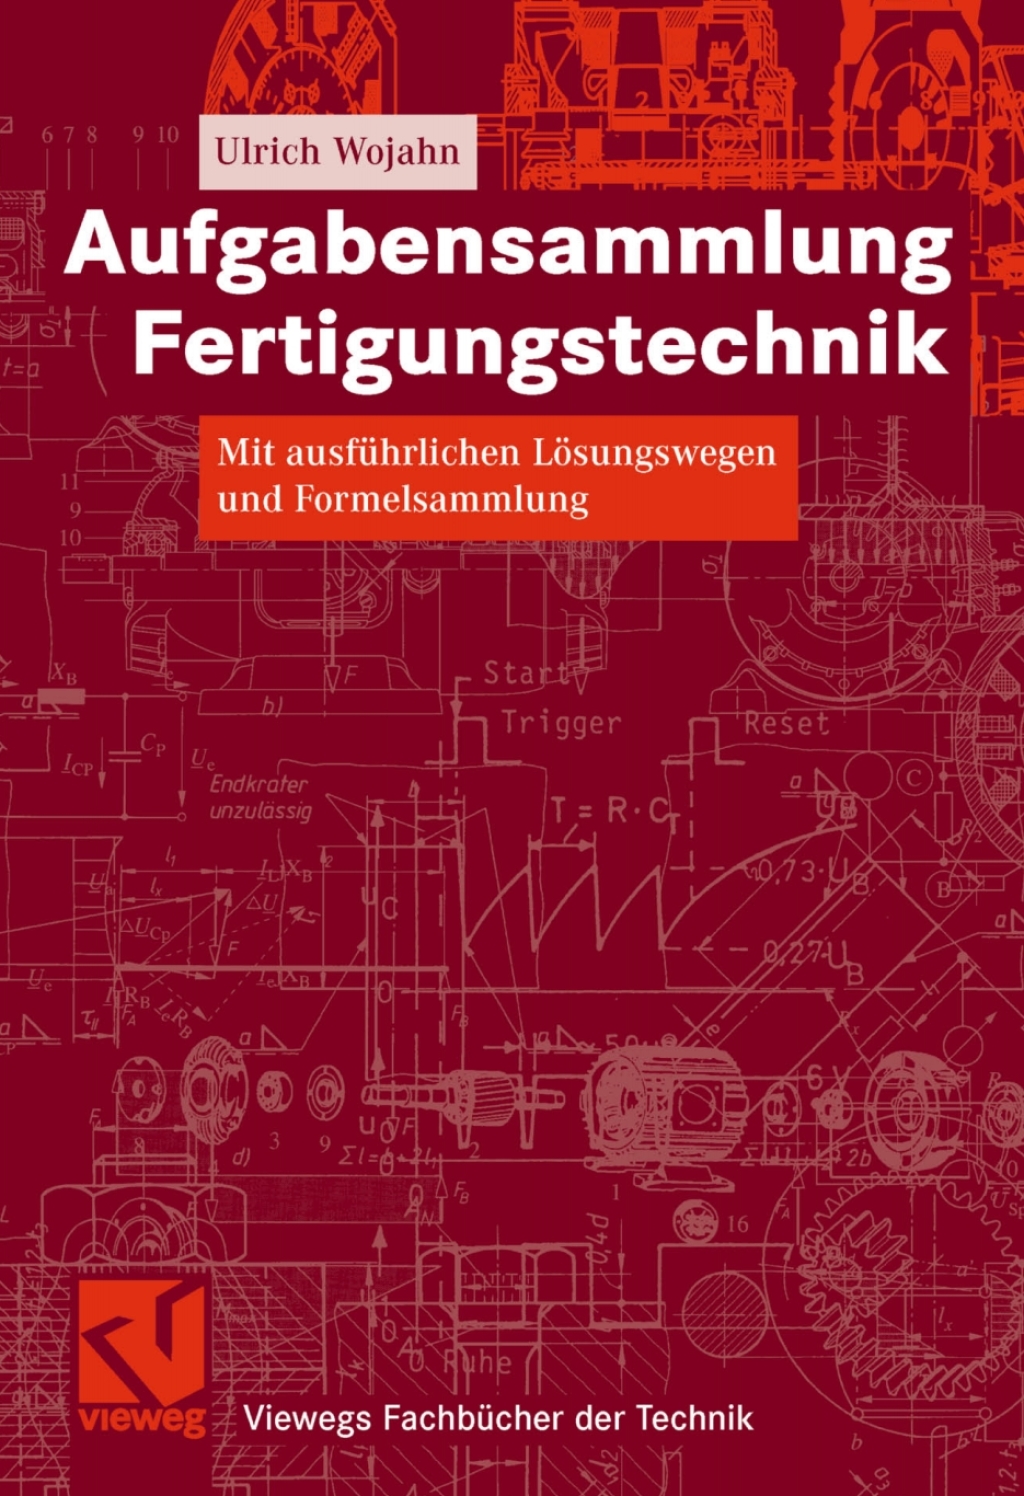 Aufgabensammlung Fertigungstechnik (eBook) - Ulrich Wojahn,